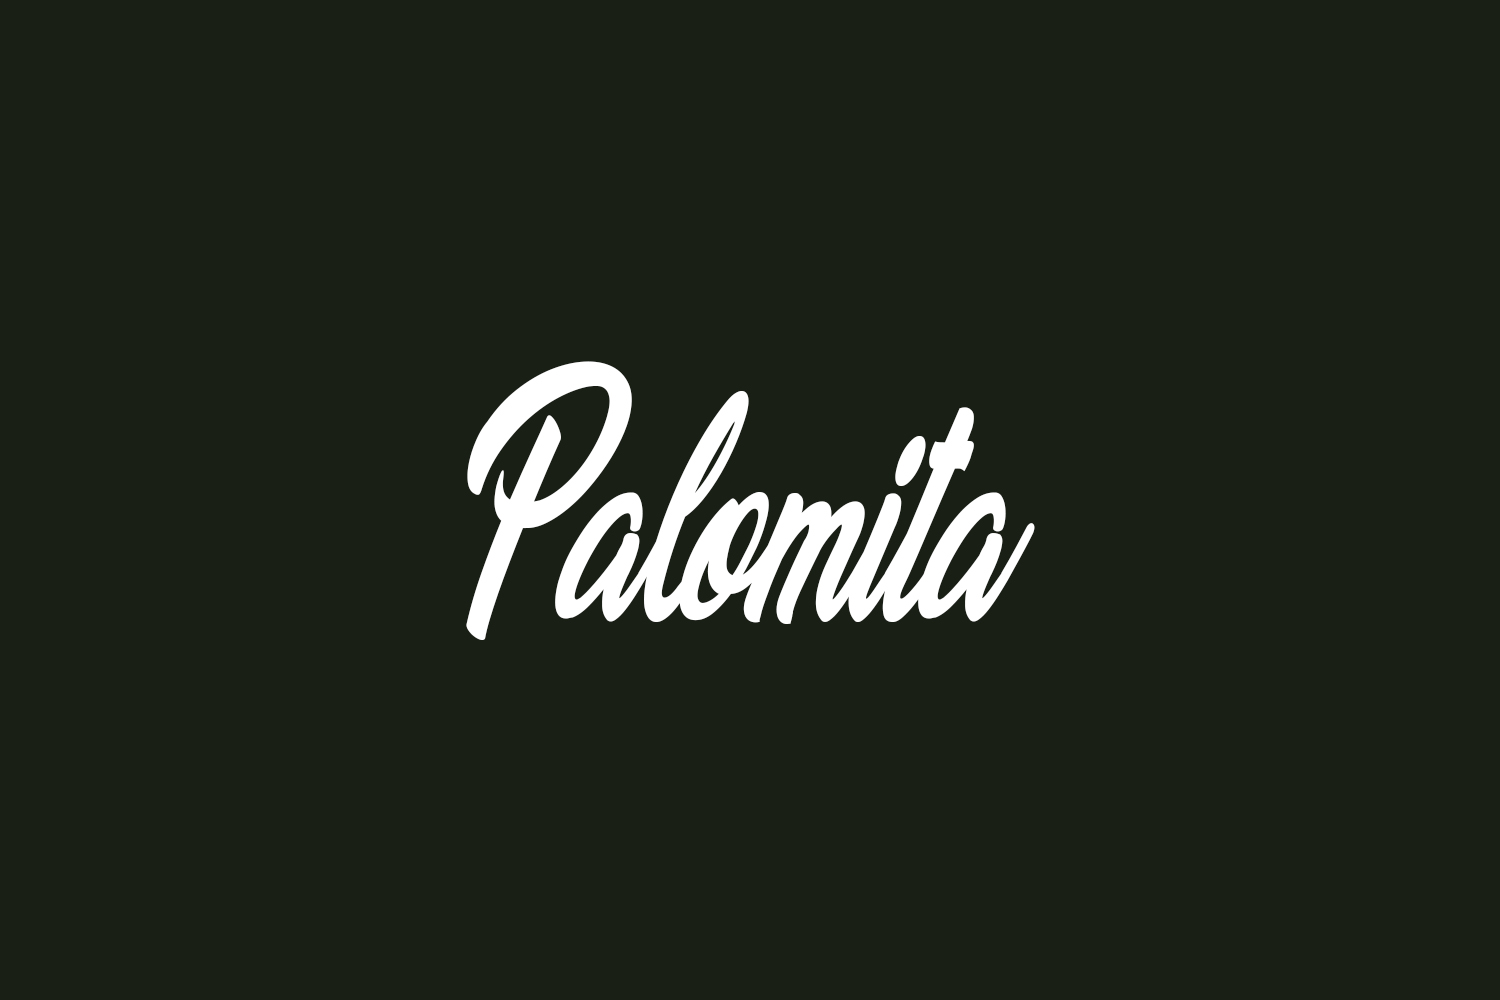 Palomita Free Font